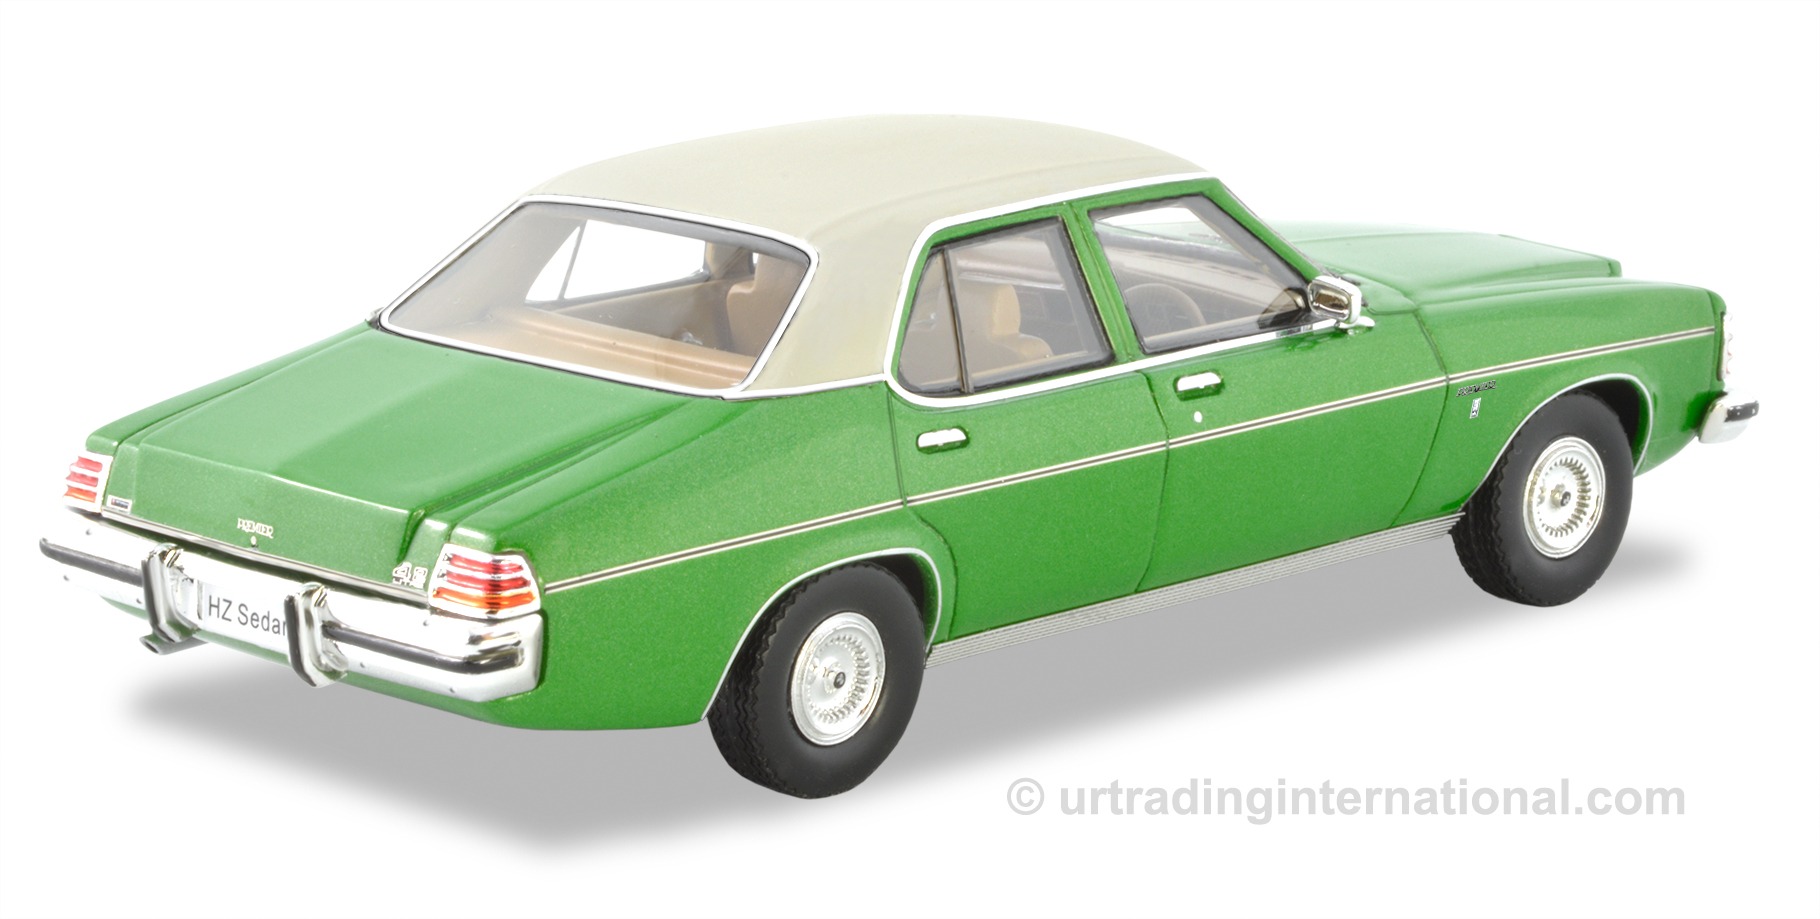 1977 Holden HZ Premier Sedan – Super Mint (Green)